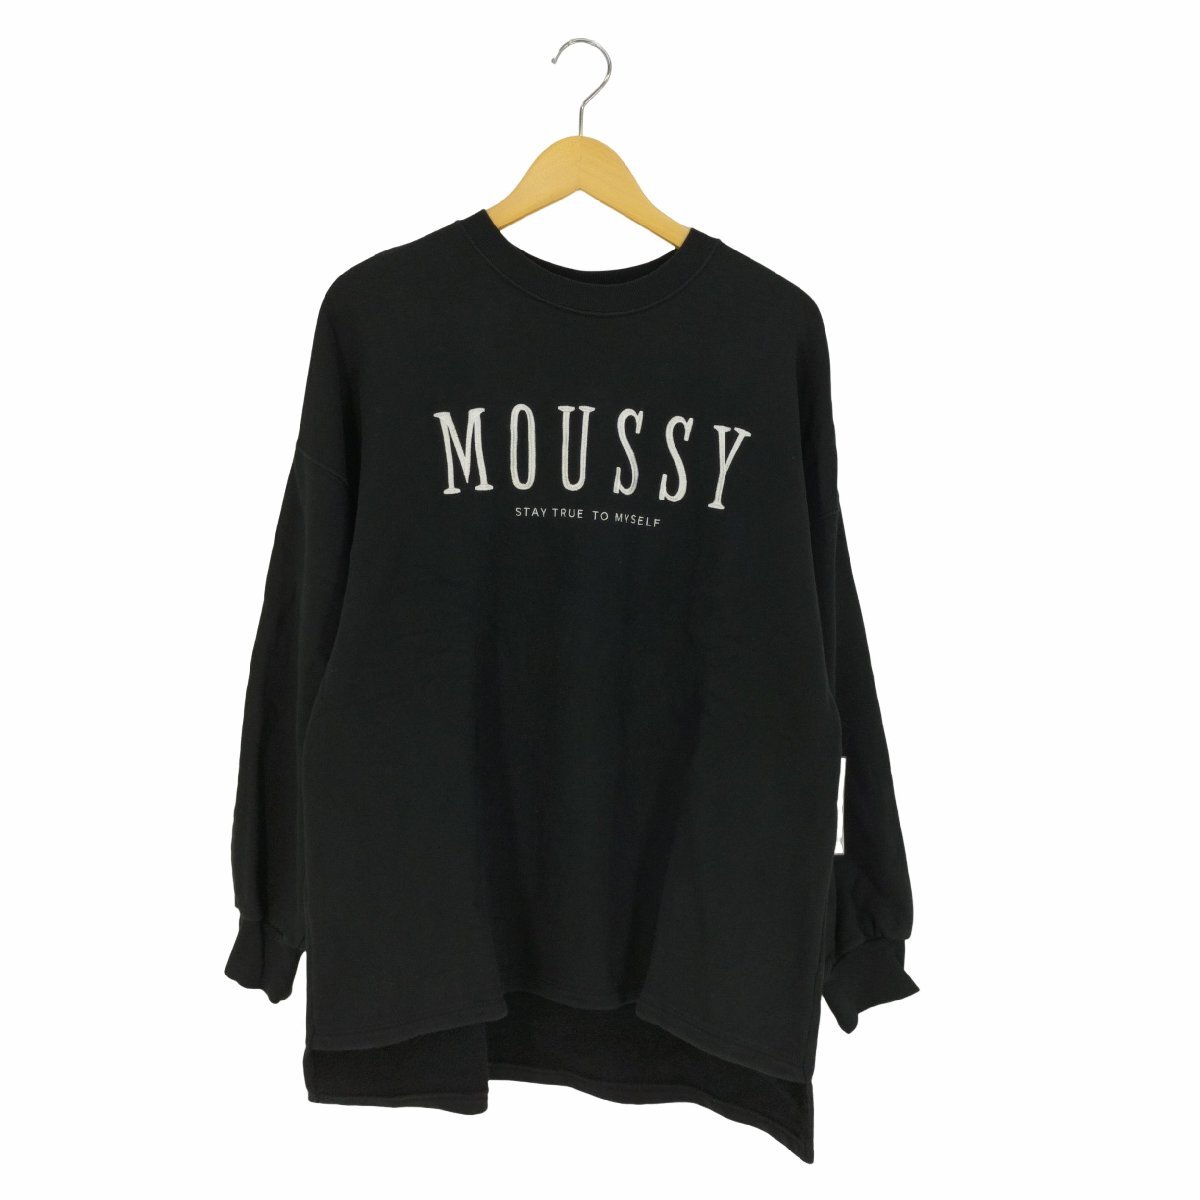 moussy(マウジー) ロゴ刺繍 ビックシルエットスウェット レディース FREE 中古 古着 0511_画像1